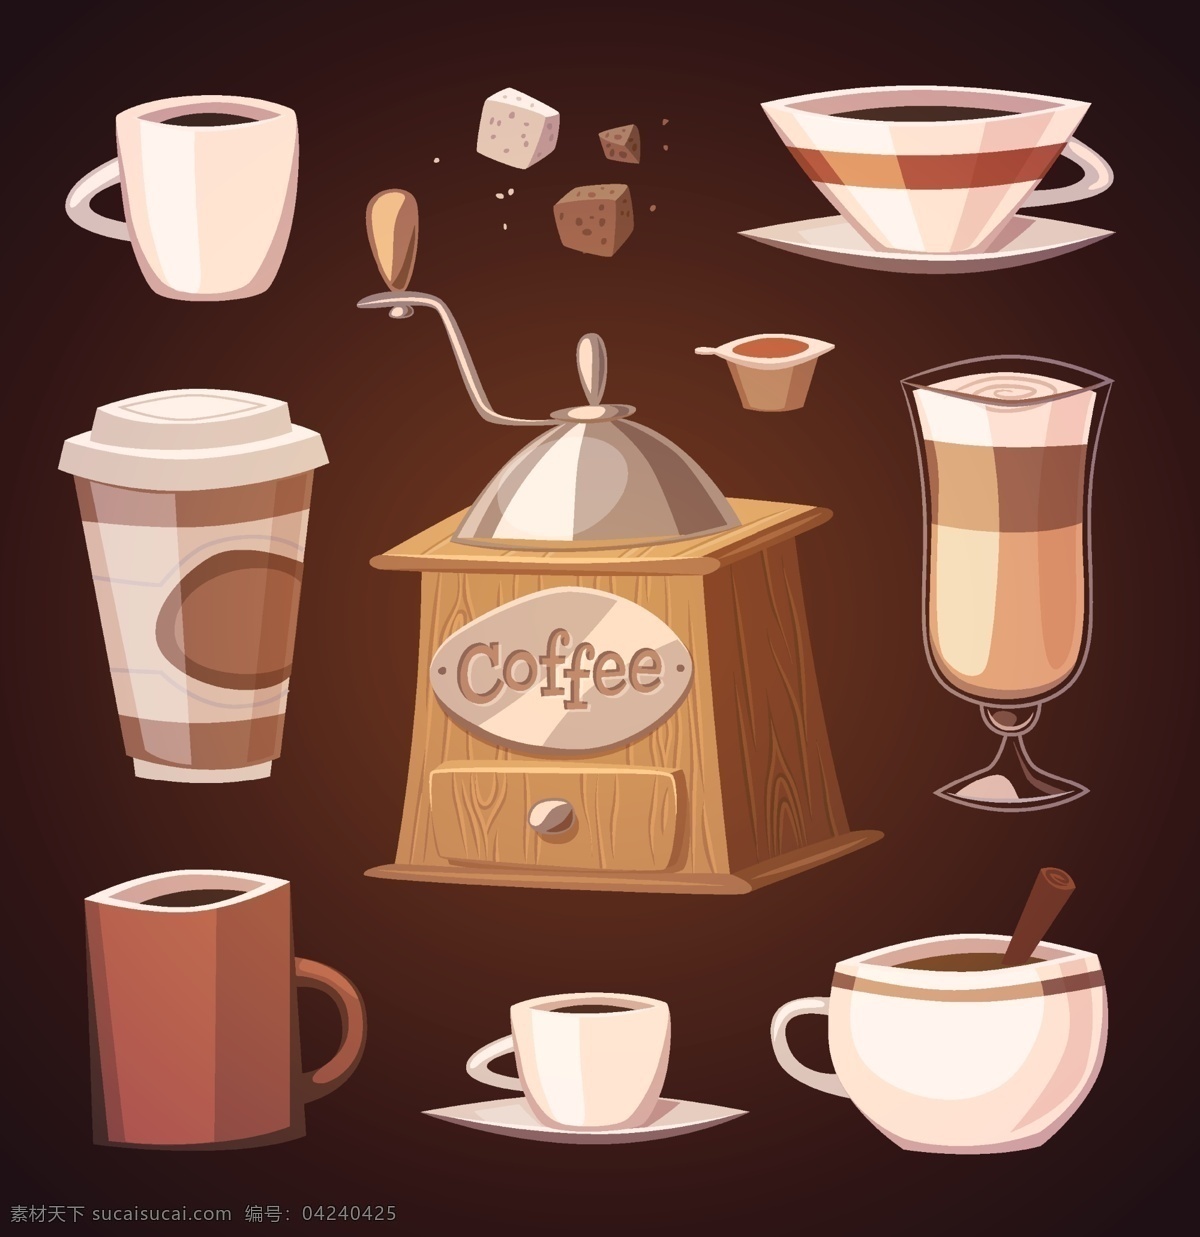 矢量咖啡和糖 矢量 咖啡 糖 模板下载 方糖 矢量咖啡 咖啡杯 咖啡元素 咖啡设计 咖啡图案 餐饮美食 生活百科 矢量素材 黑色